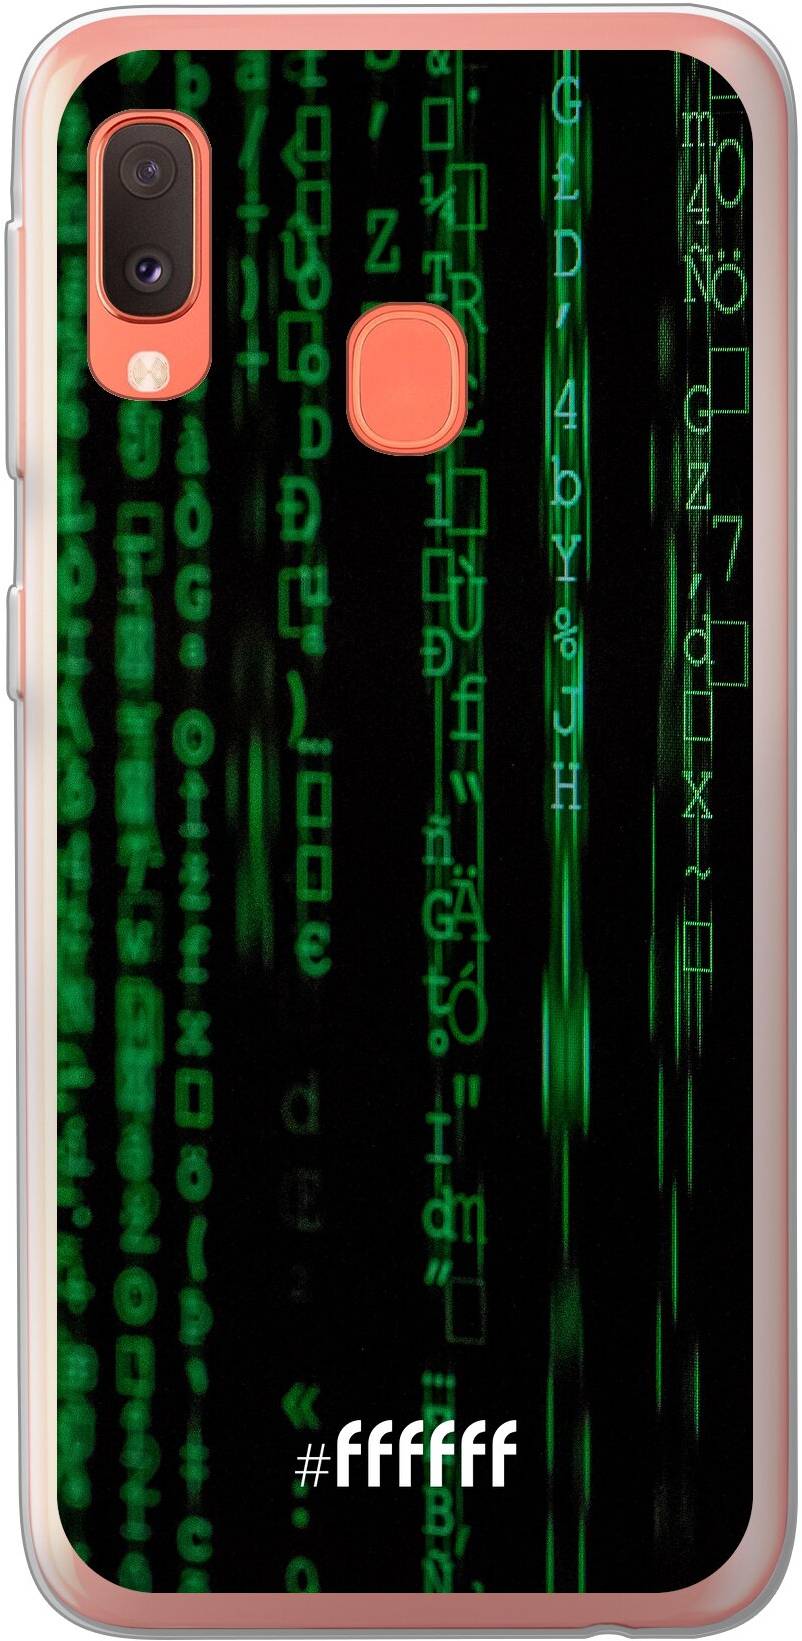 Hacking The Matrix Galaxy A20e